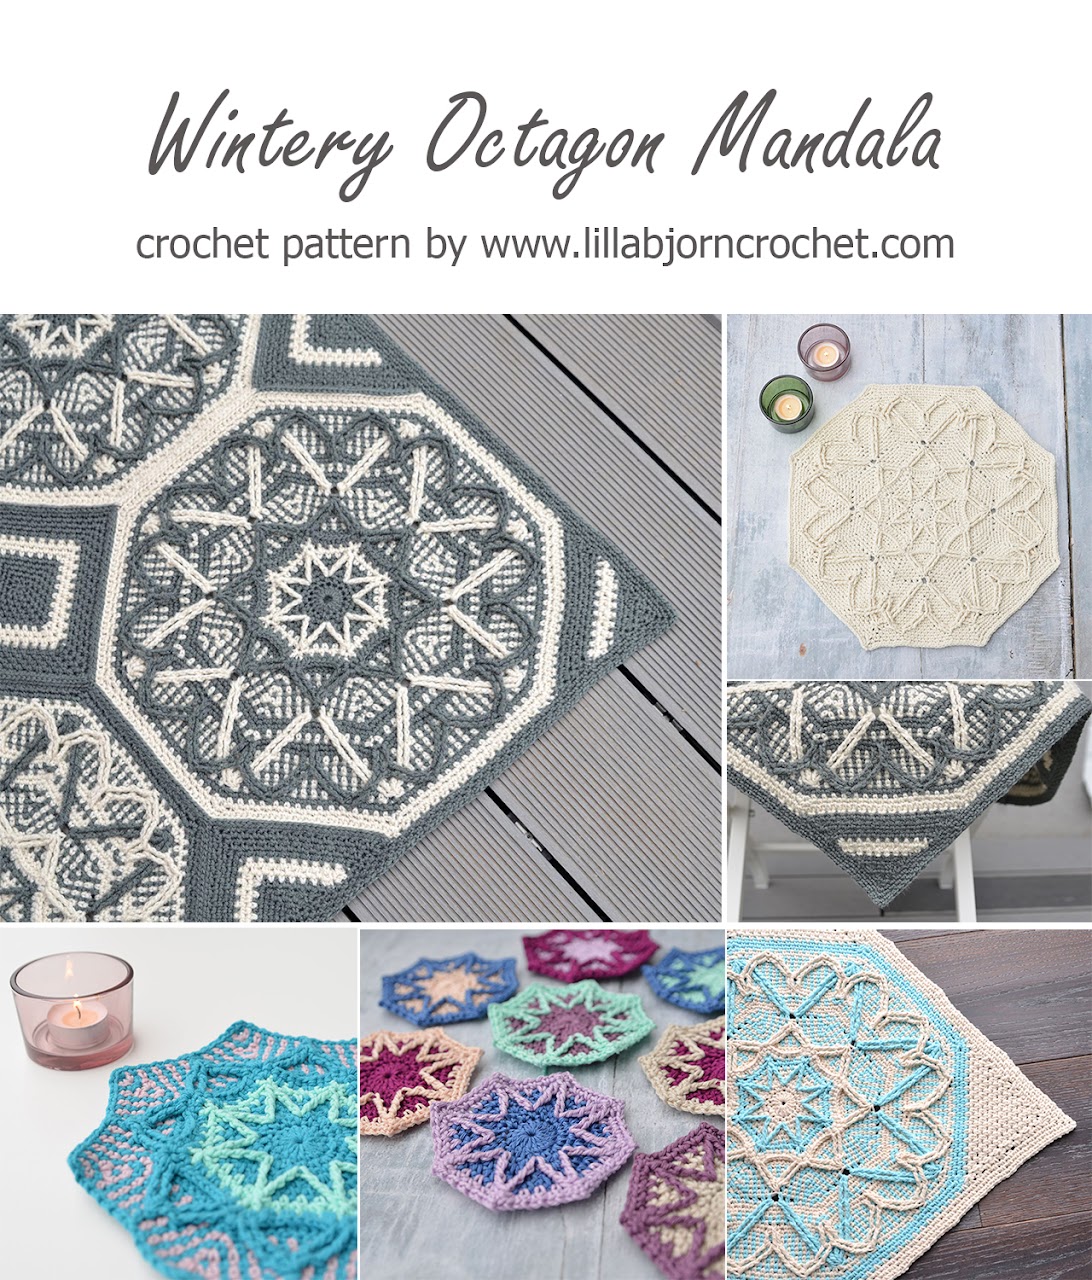 Wintery Octagon Mandala - overlay crochet pattern by www.lillabjorncrochet.com